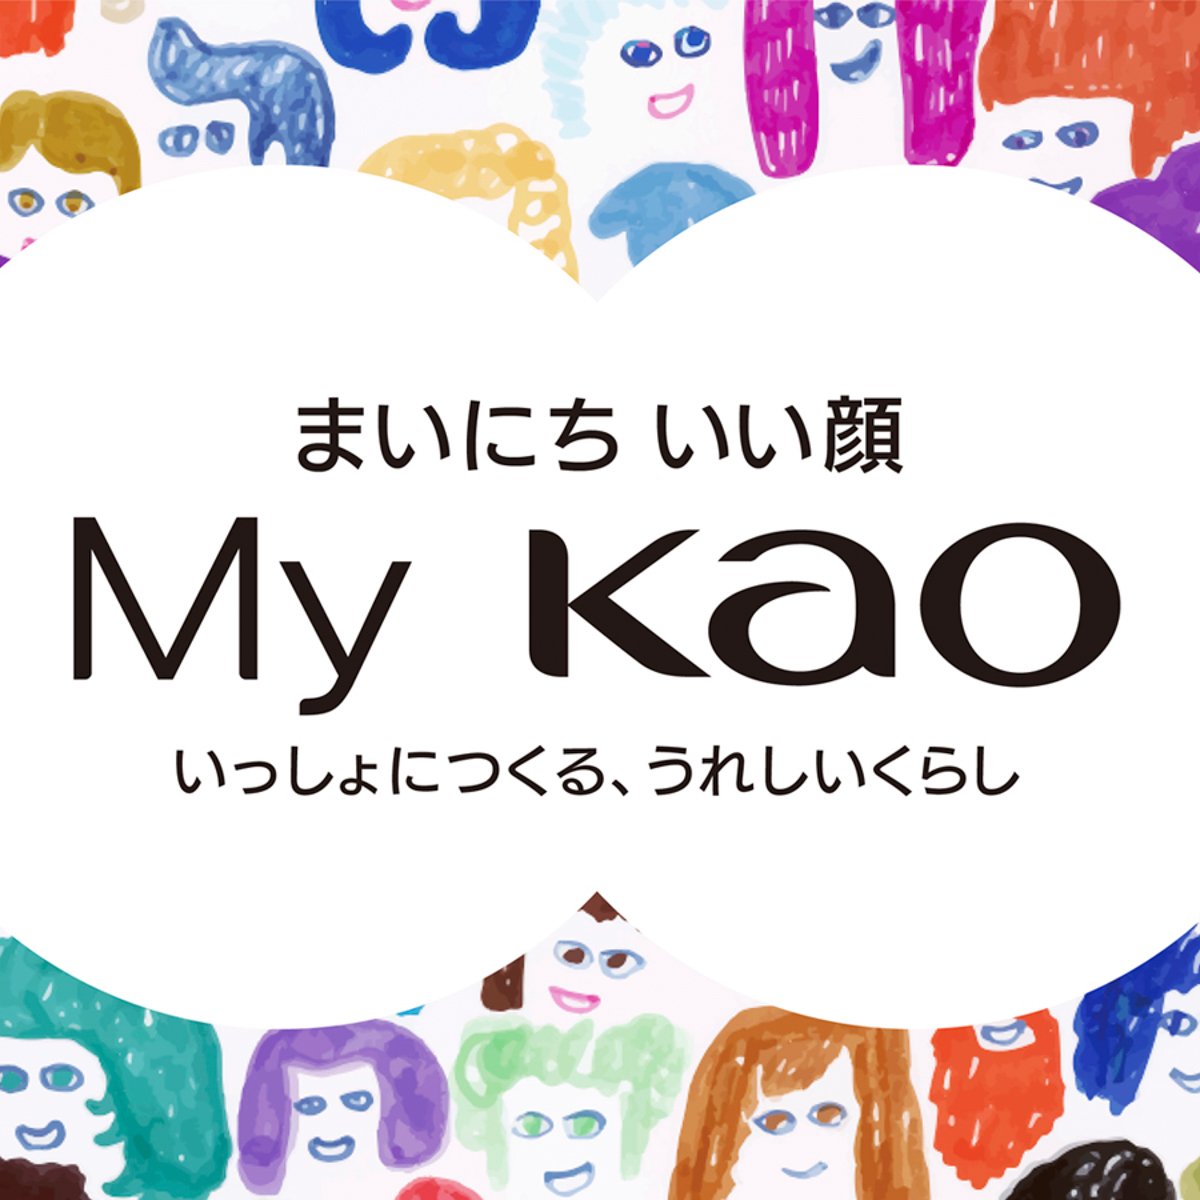 花王が新プラットフォーム「My Kao」を開設 初のブランド横断ECを実装